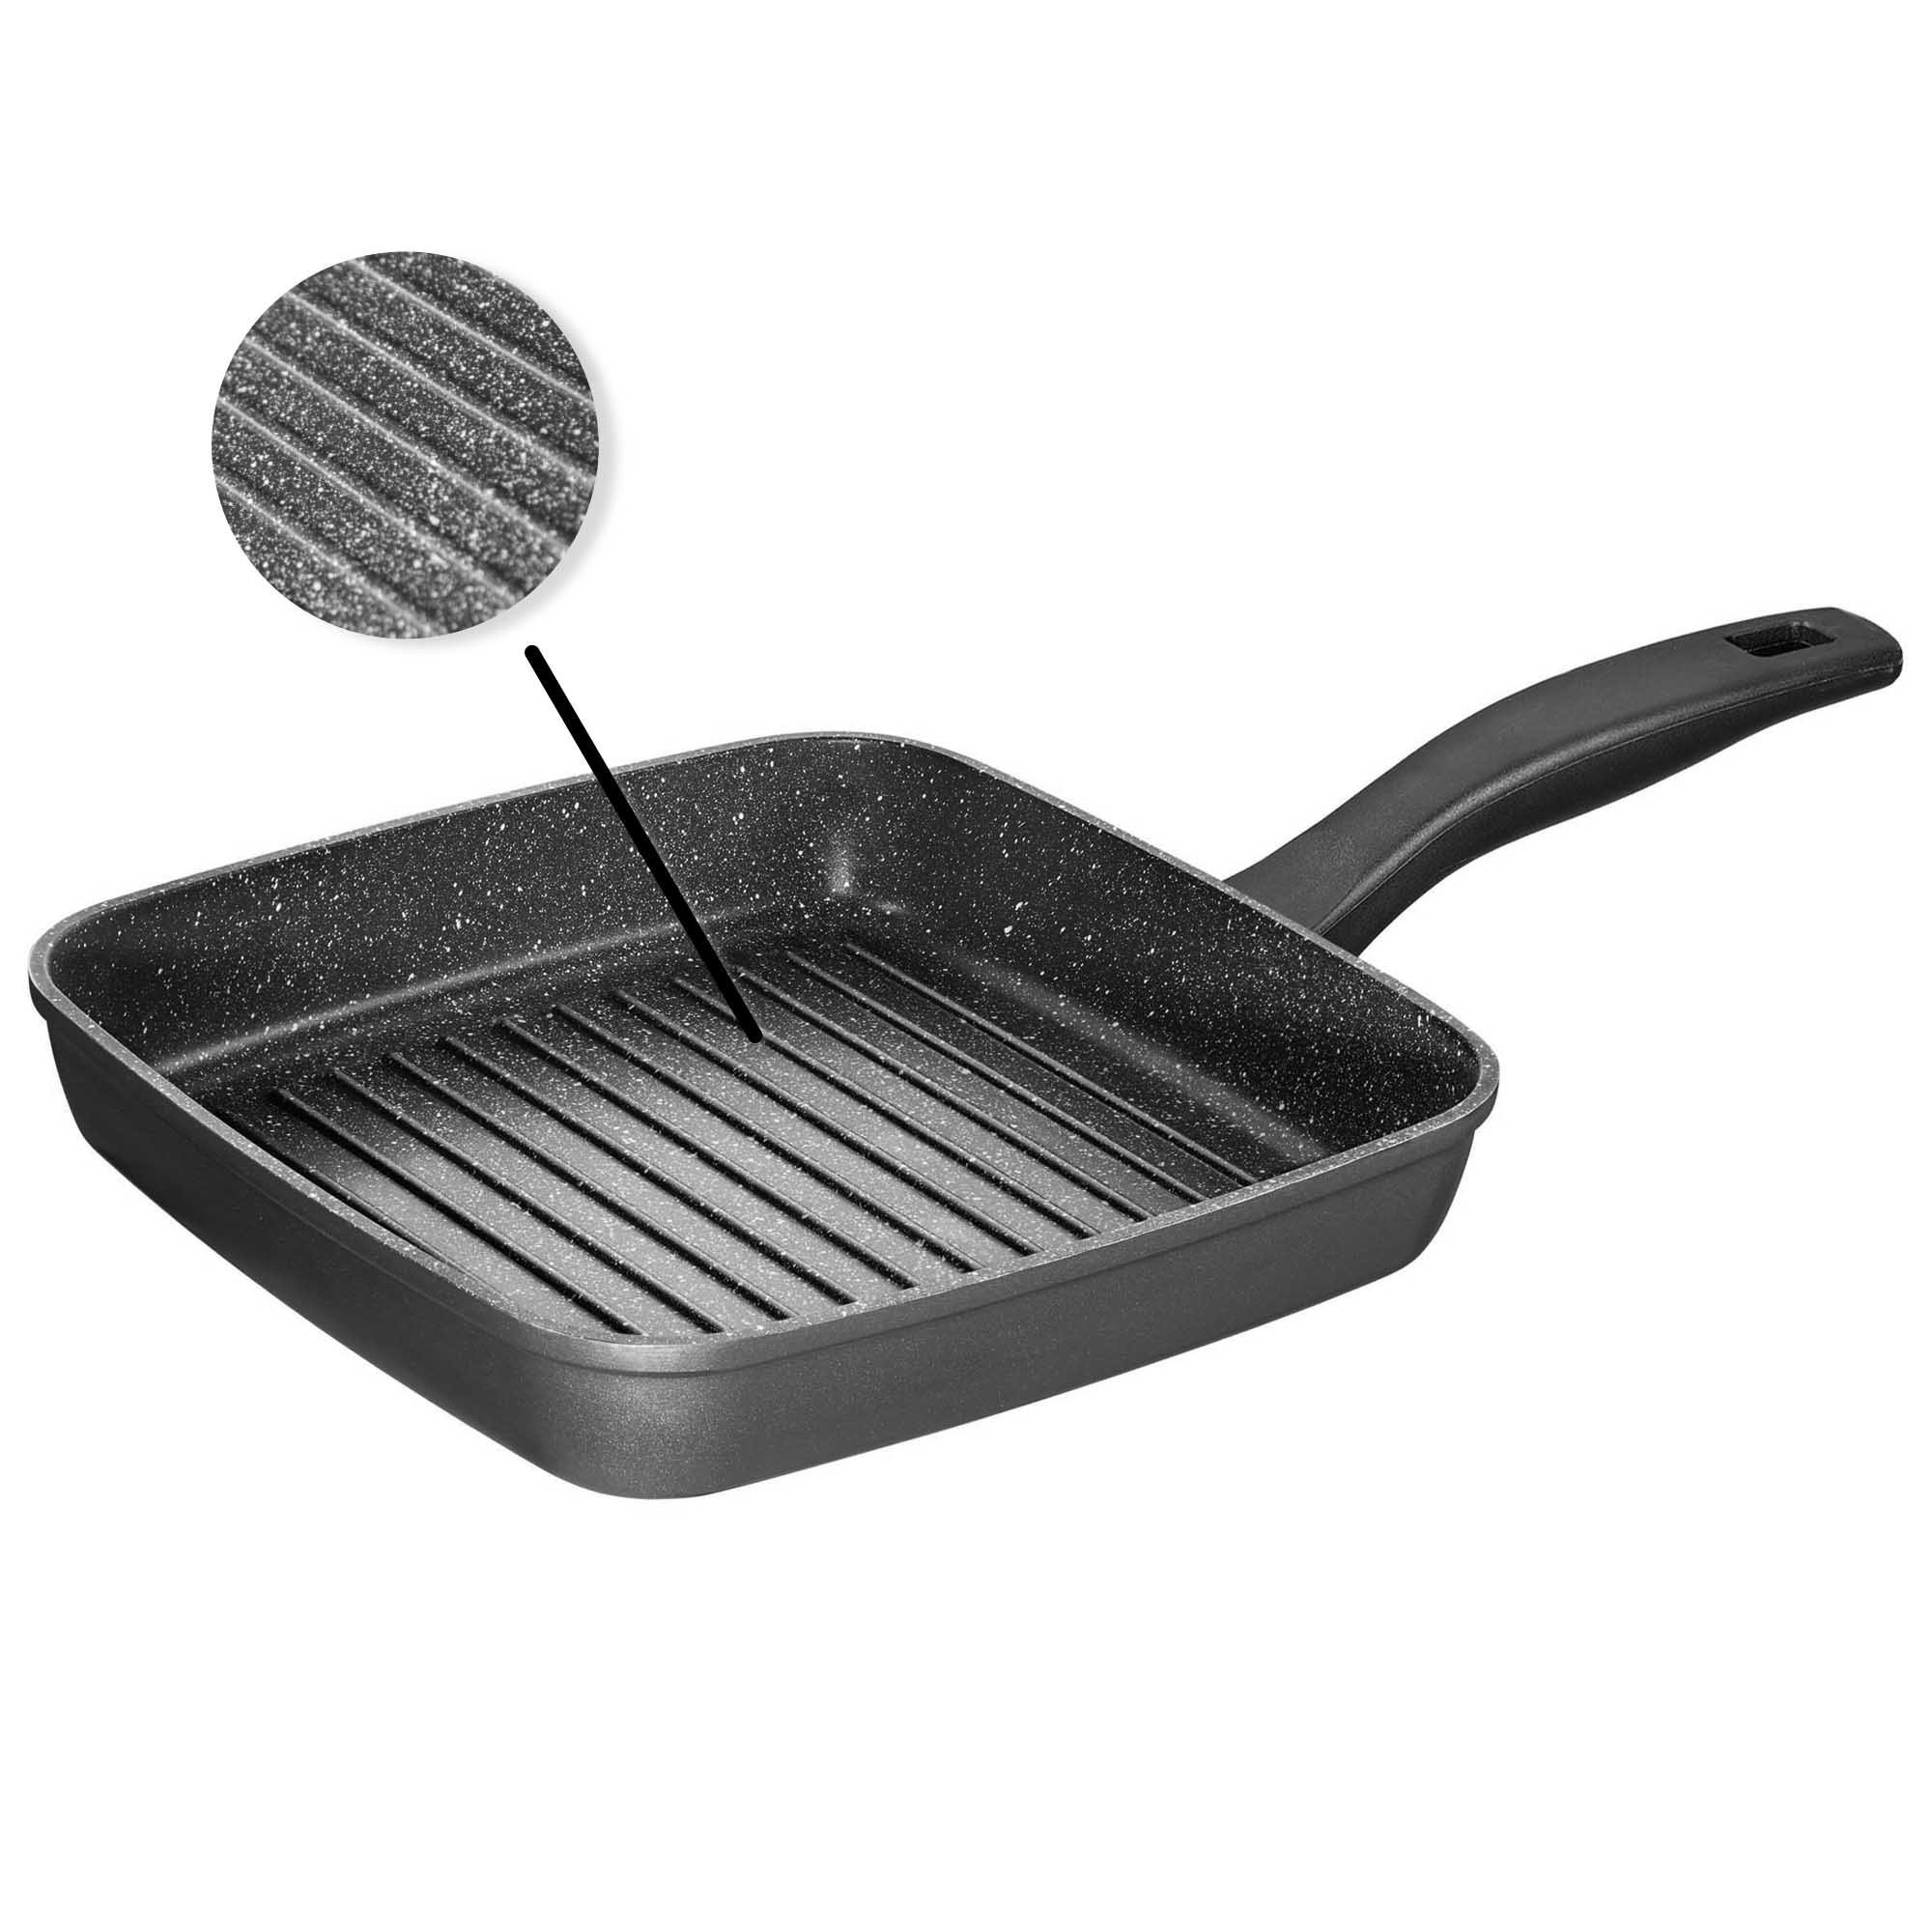 STONELINE® BBQ Griddle Pan 26 cm, Non-Stick Pan | CLASSIC